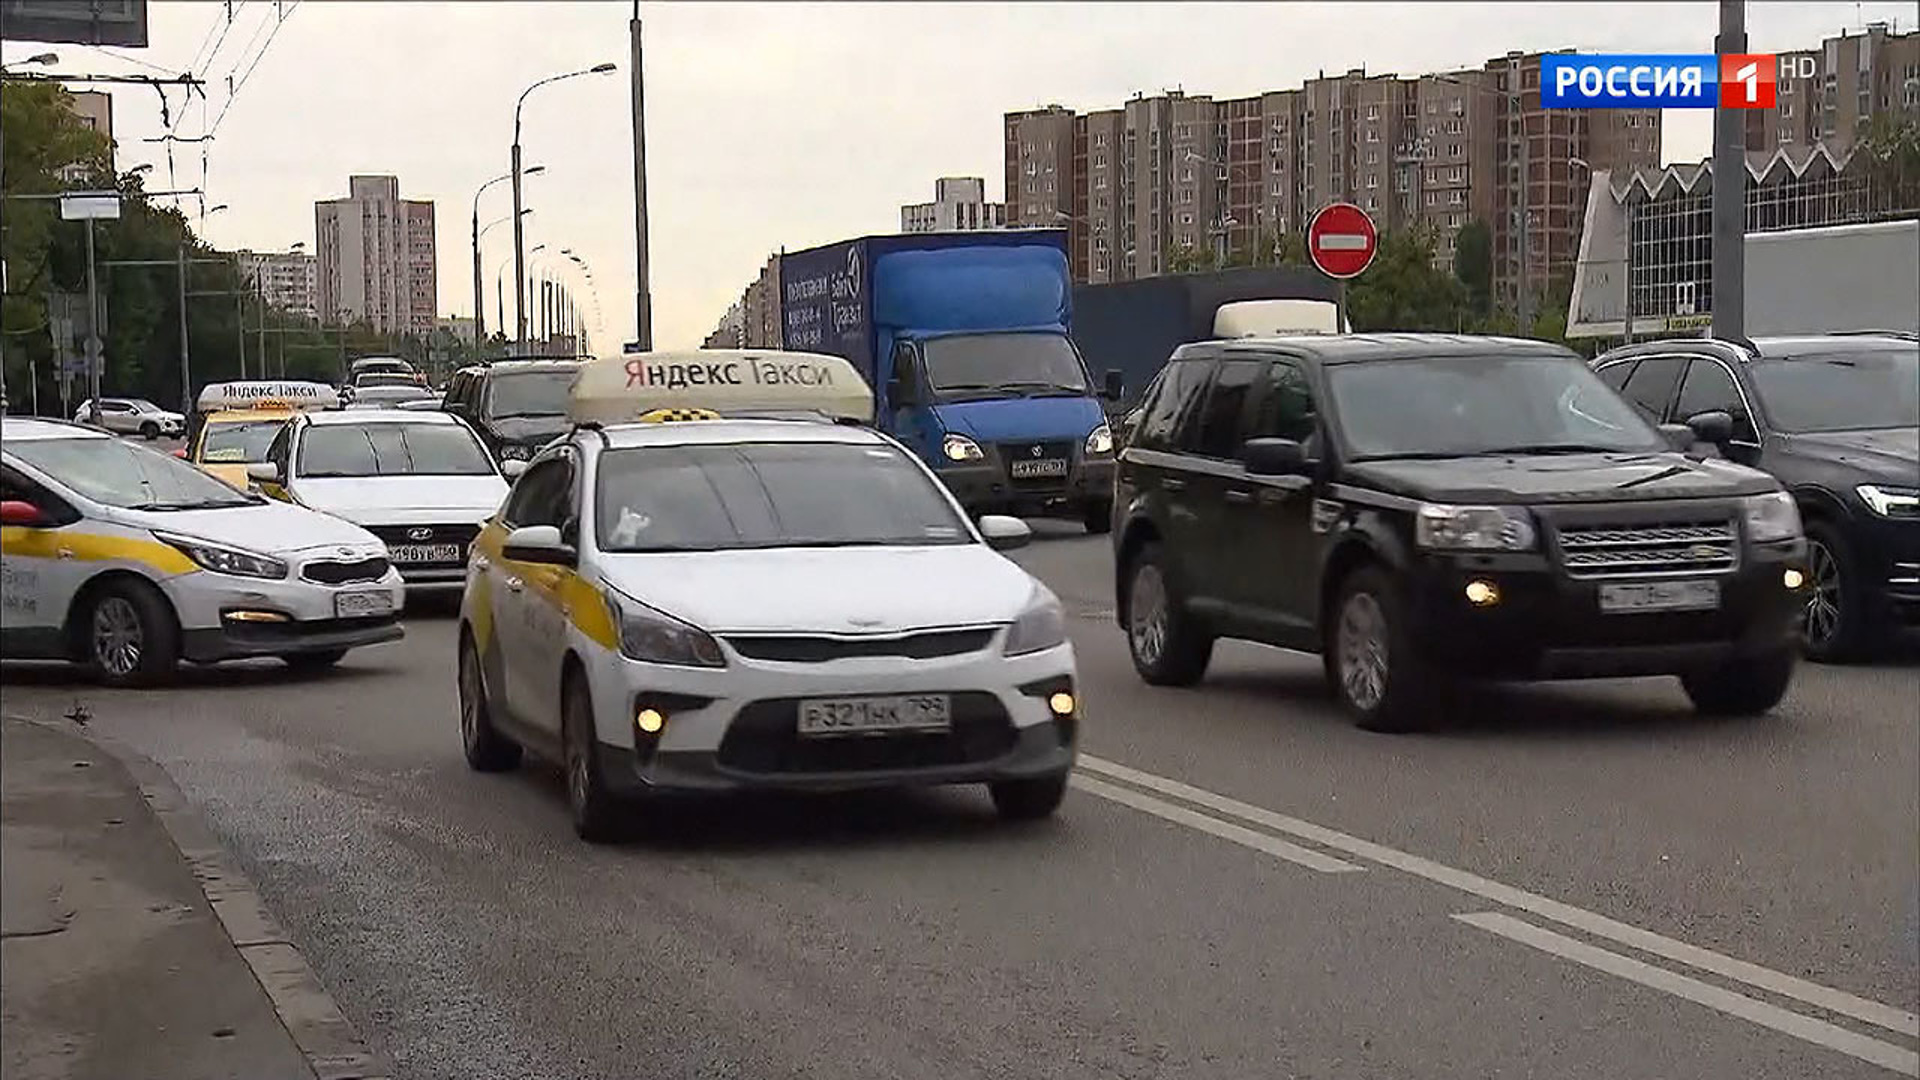 Таксистам запретили. Автобусная полоса для такси. Выделенная полоса для такси. Выделенные полосы в Москве для такси. Такси по автобусной полосе.